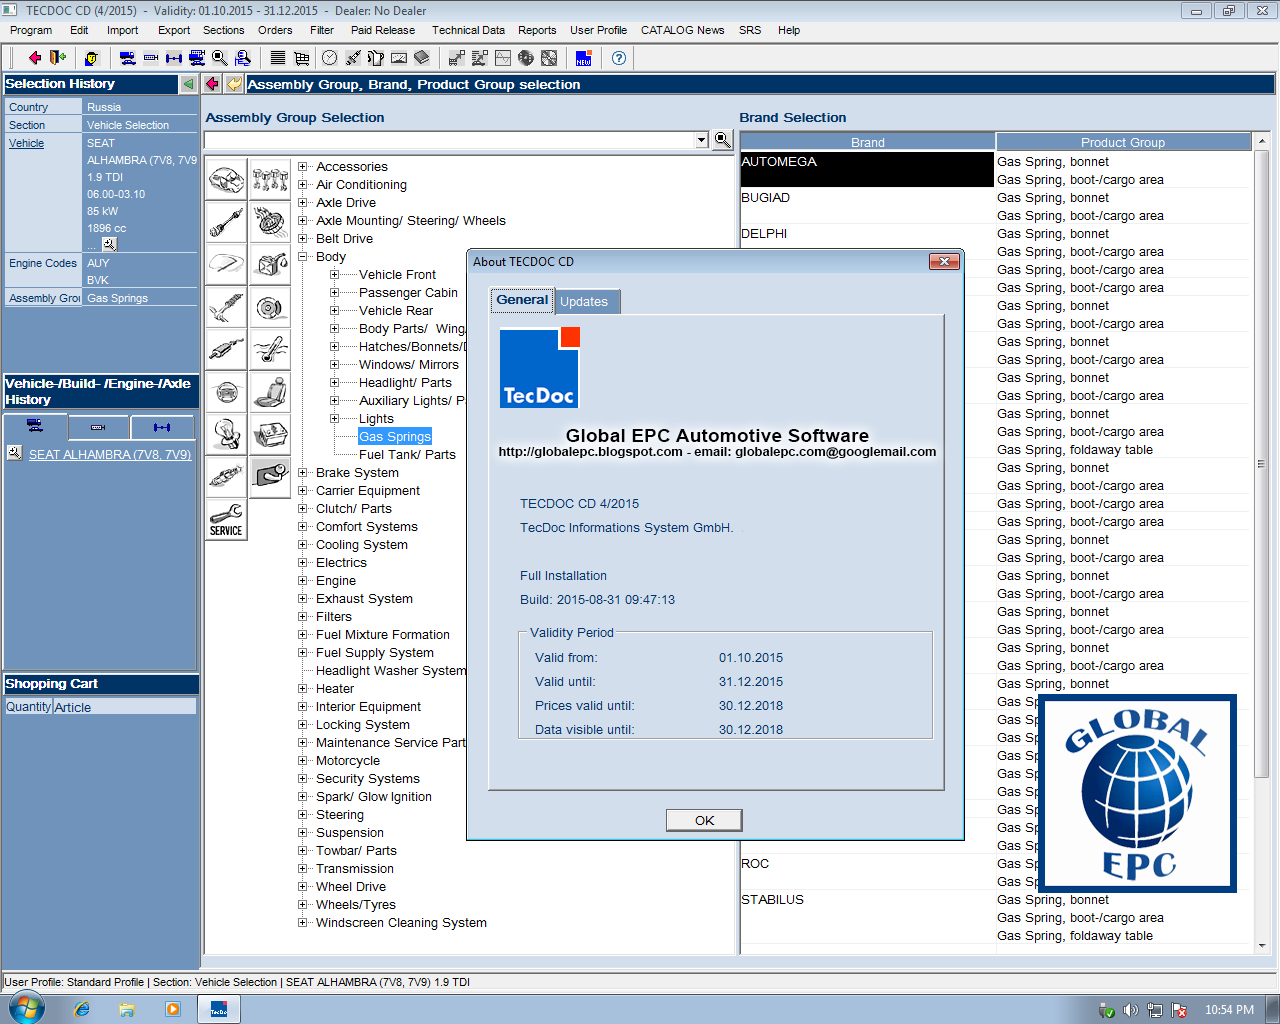 Delphi 2014.2 keygen download windows 10